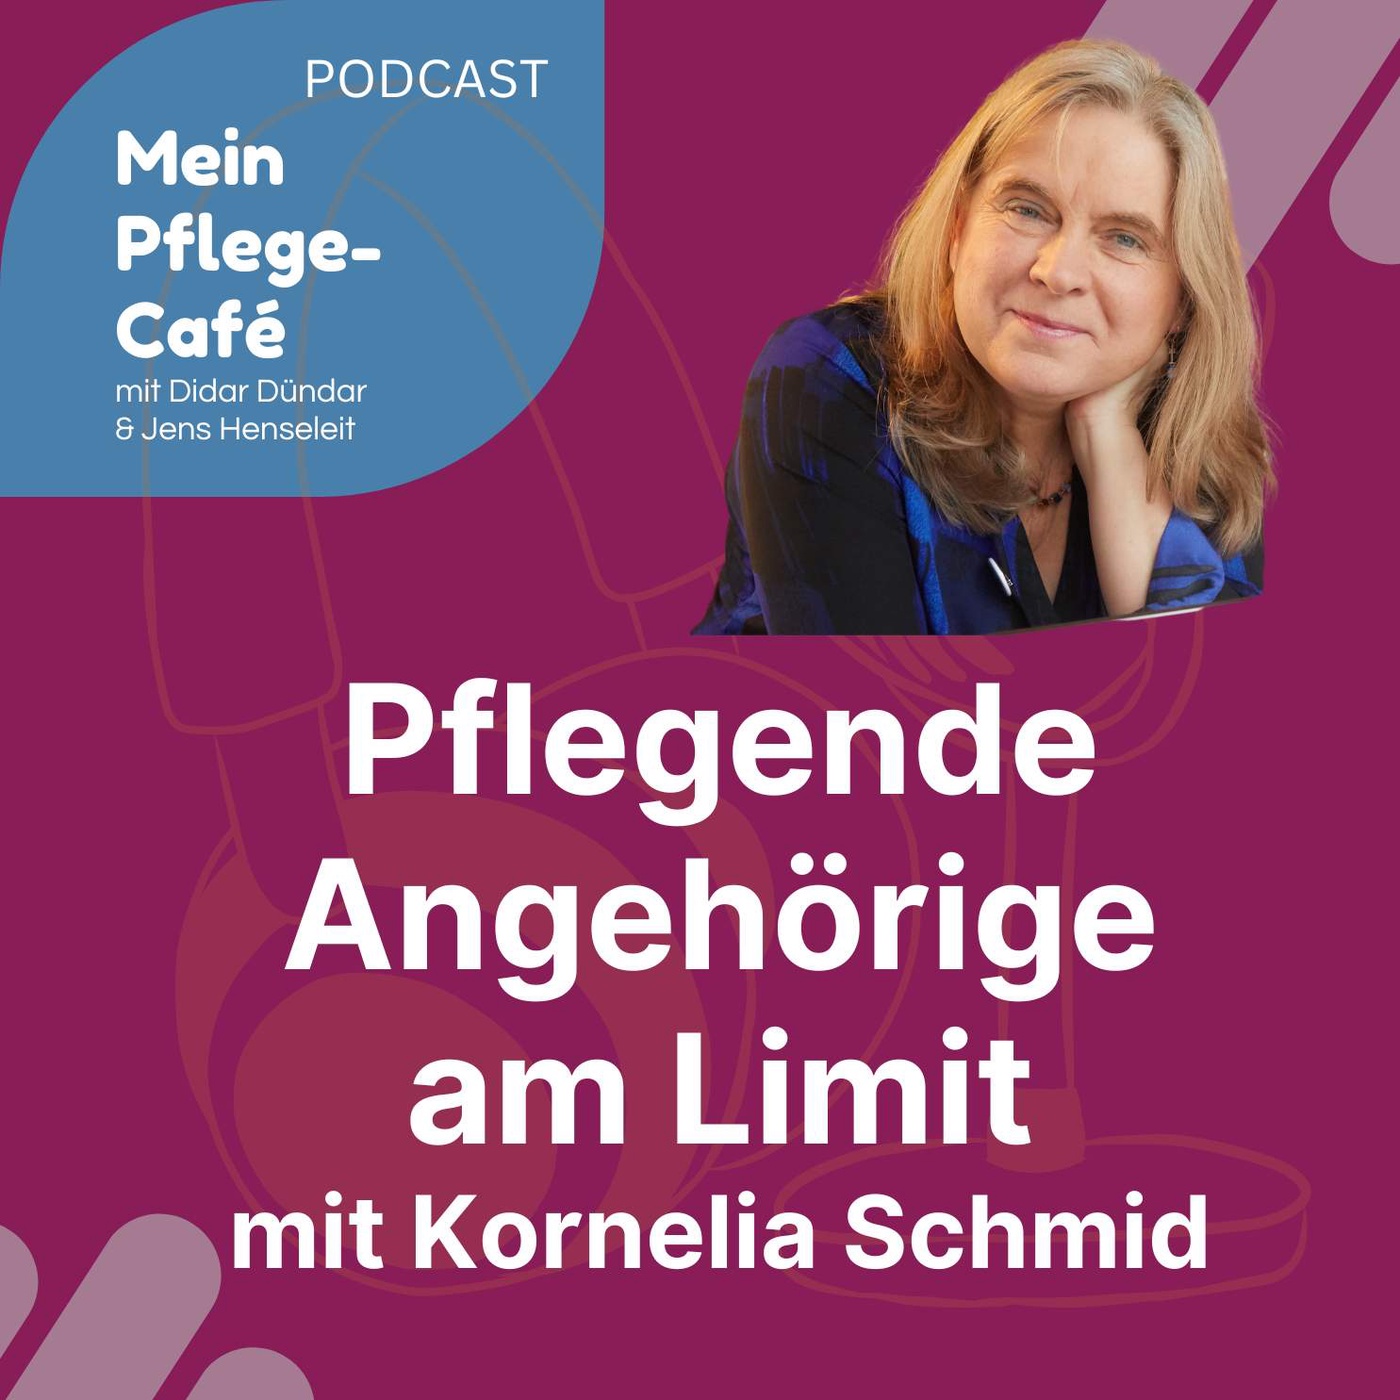 70 - Pflegende Angehörige am Limit - mit Kornelia Schmid